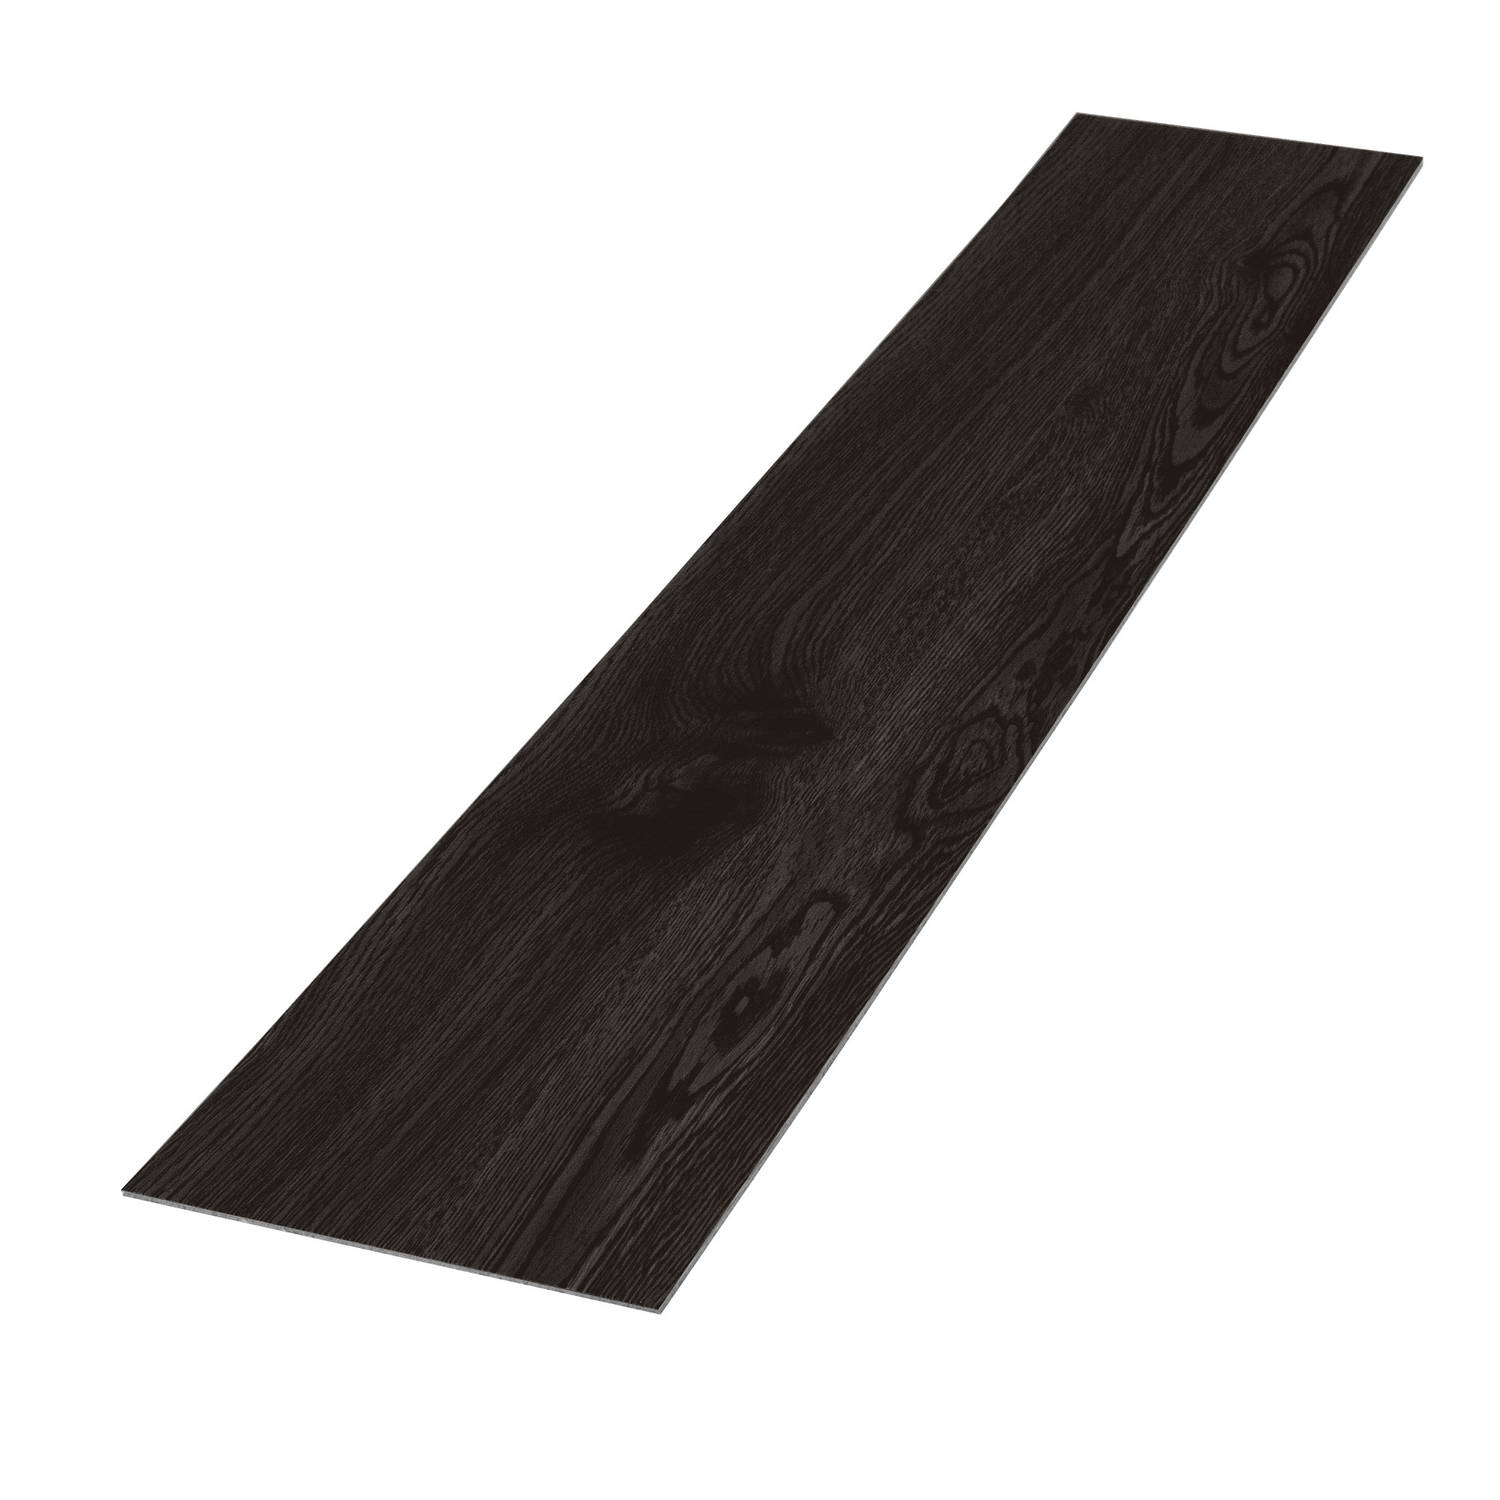 Deluxe PVC klevende vinylvloer voor 2,3 m² eik donkergrijs 2 mm dik ML design